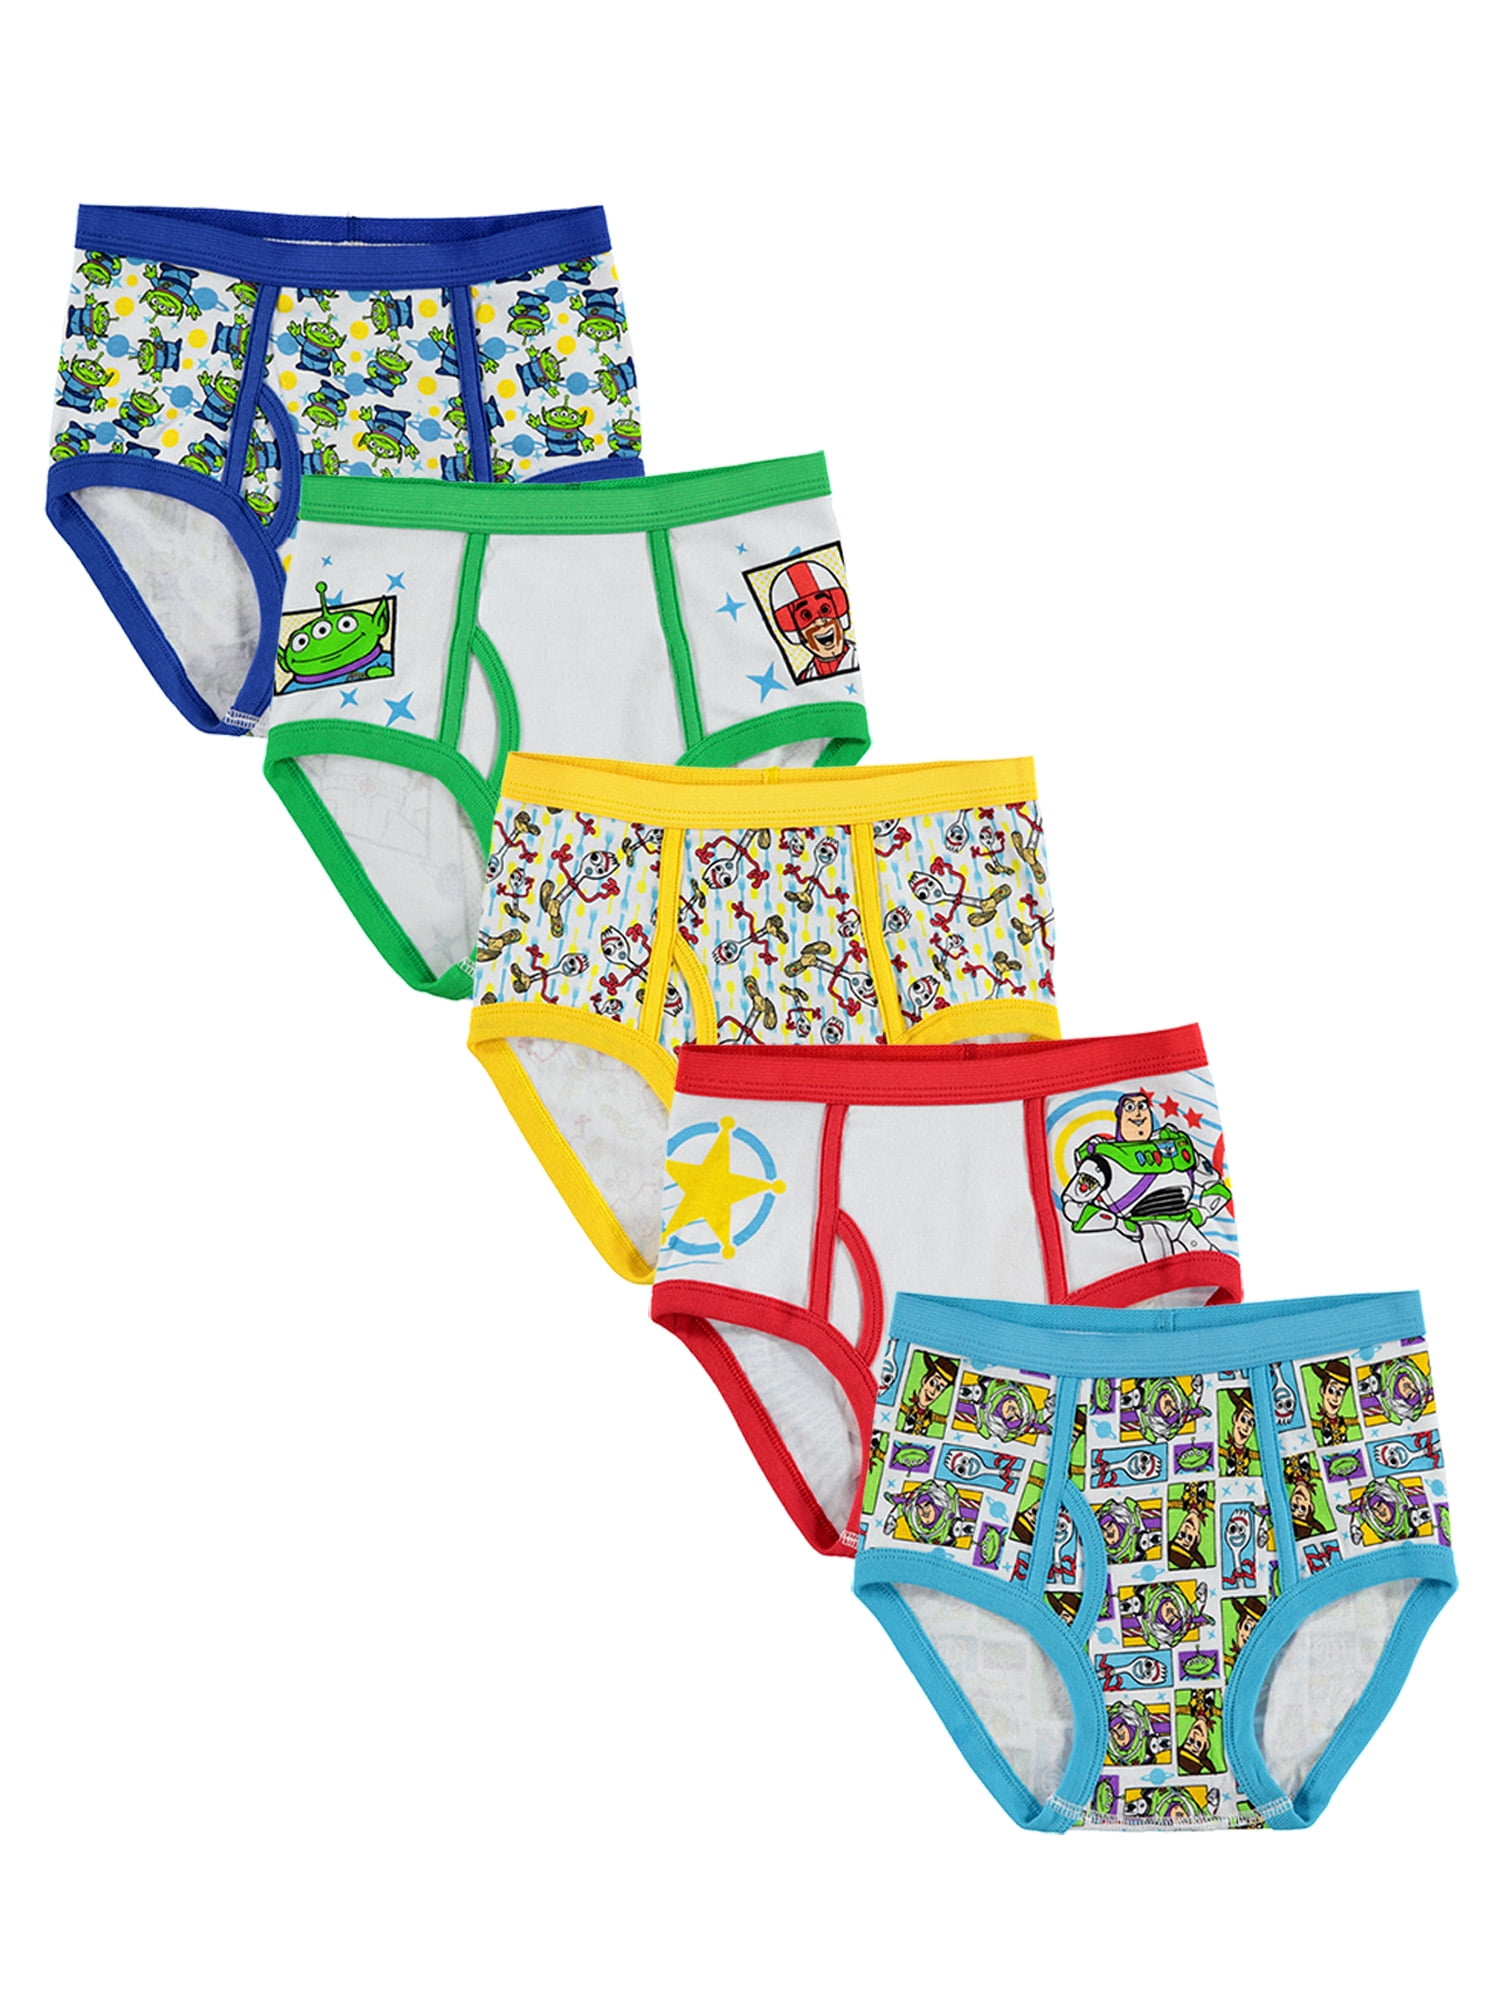 Toy Story Boys Underwear, 5 Pack Briefs Sizes 4 - 8 